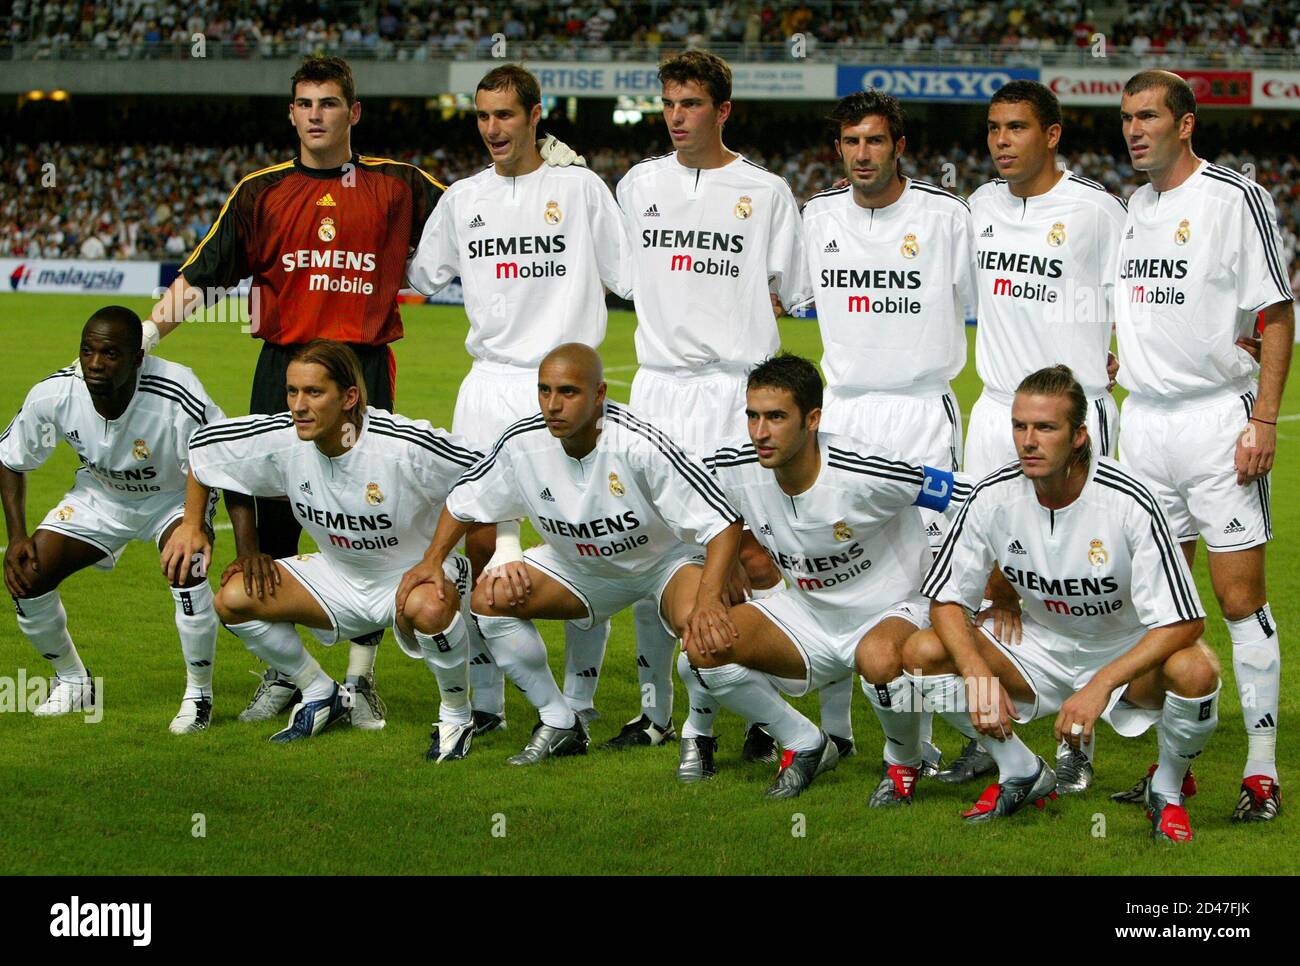 2003 год словами. Реал Мадрид Галактикос состав 2004. Состав Галактикос Реал Мадрид 2005. Состав Реал Мадрид 2004. Зидан Реал Мадрид 2004.